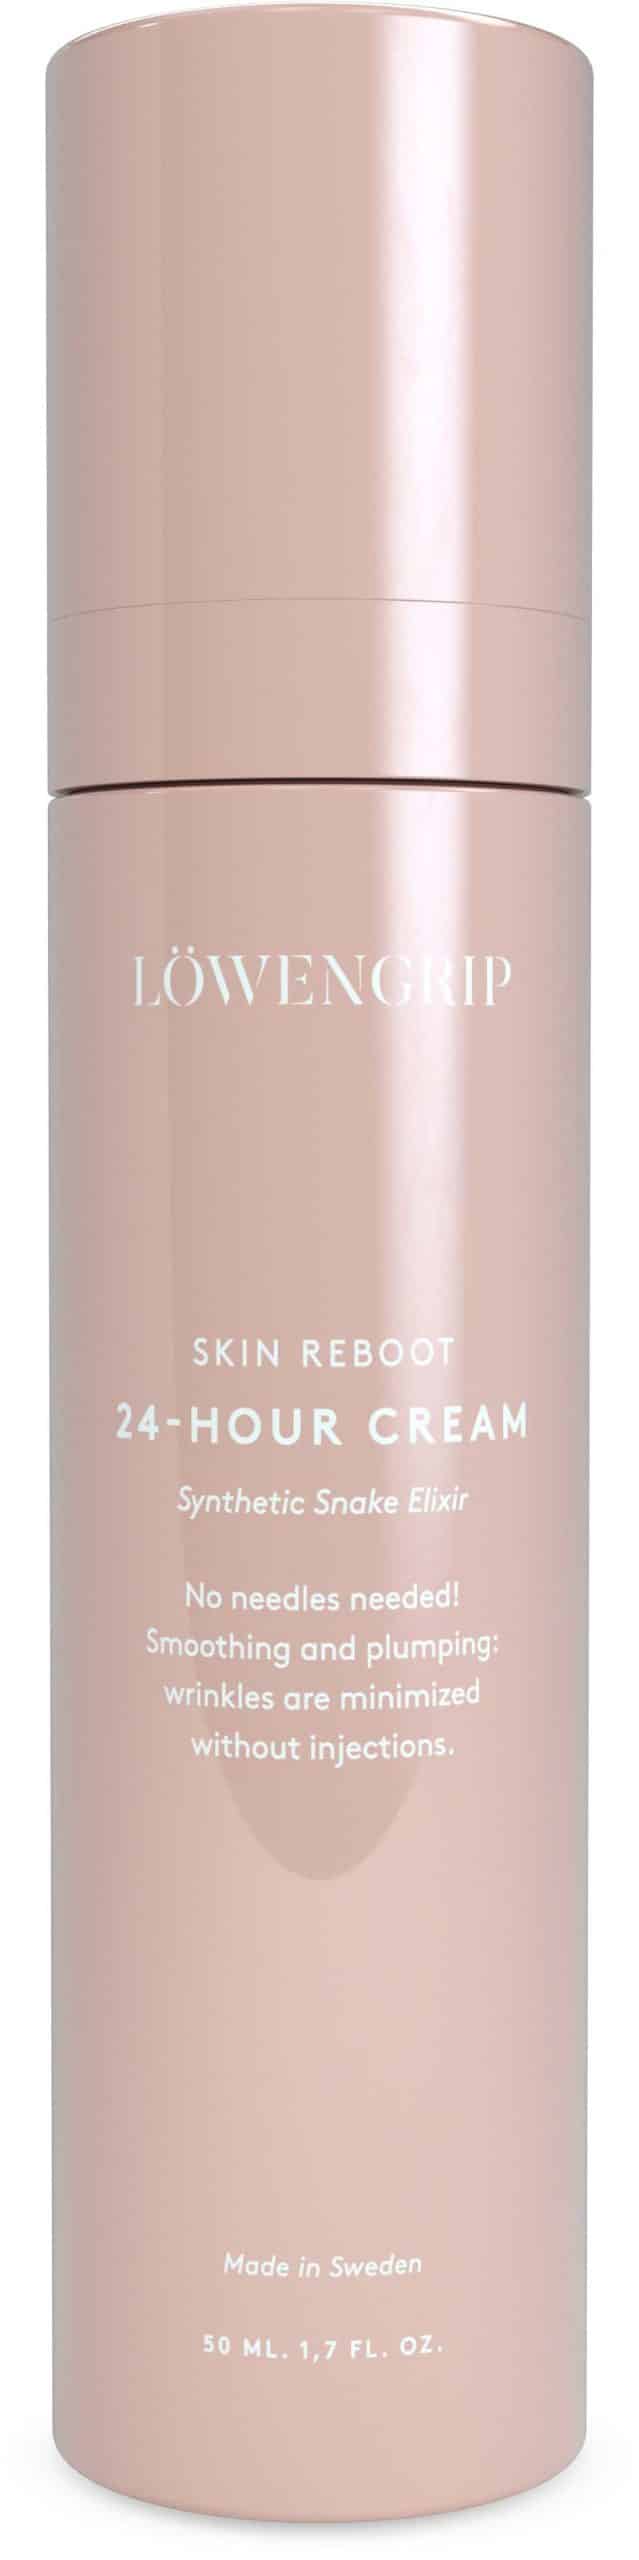 Löwengrip Skin Reboot 24-Hour Intensive Anti-Wrinkle Cream (50 ml)